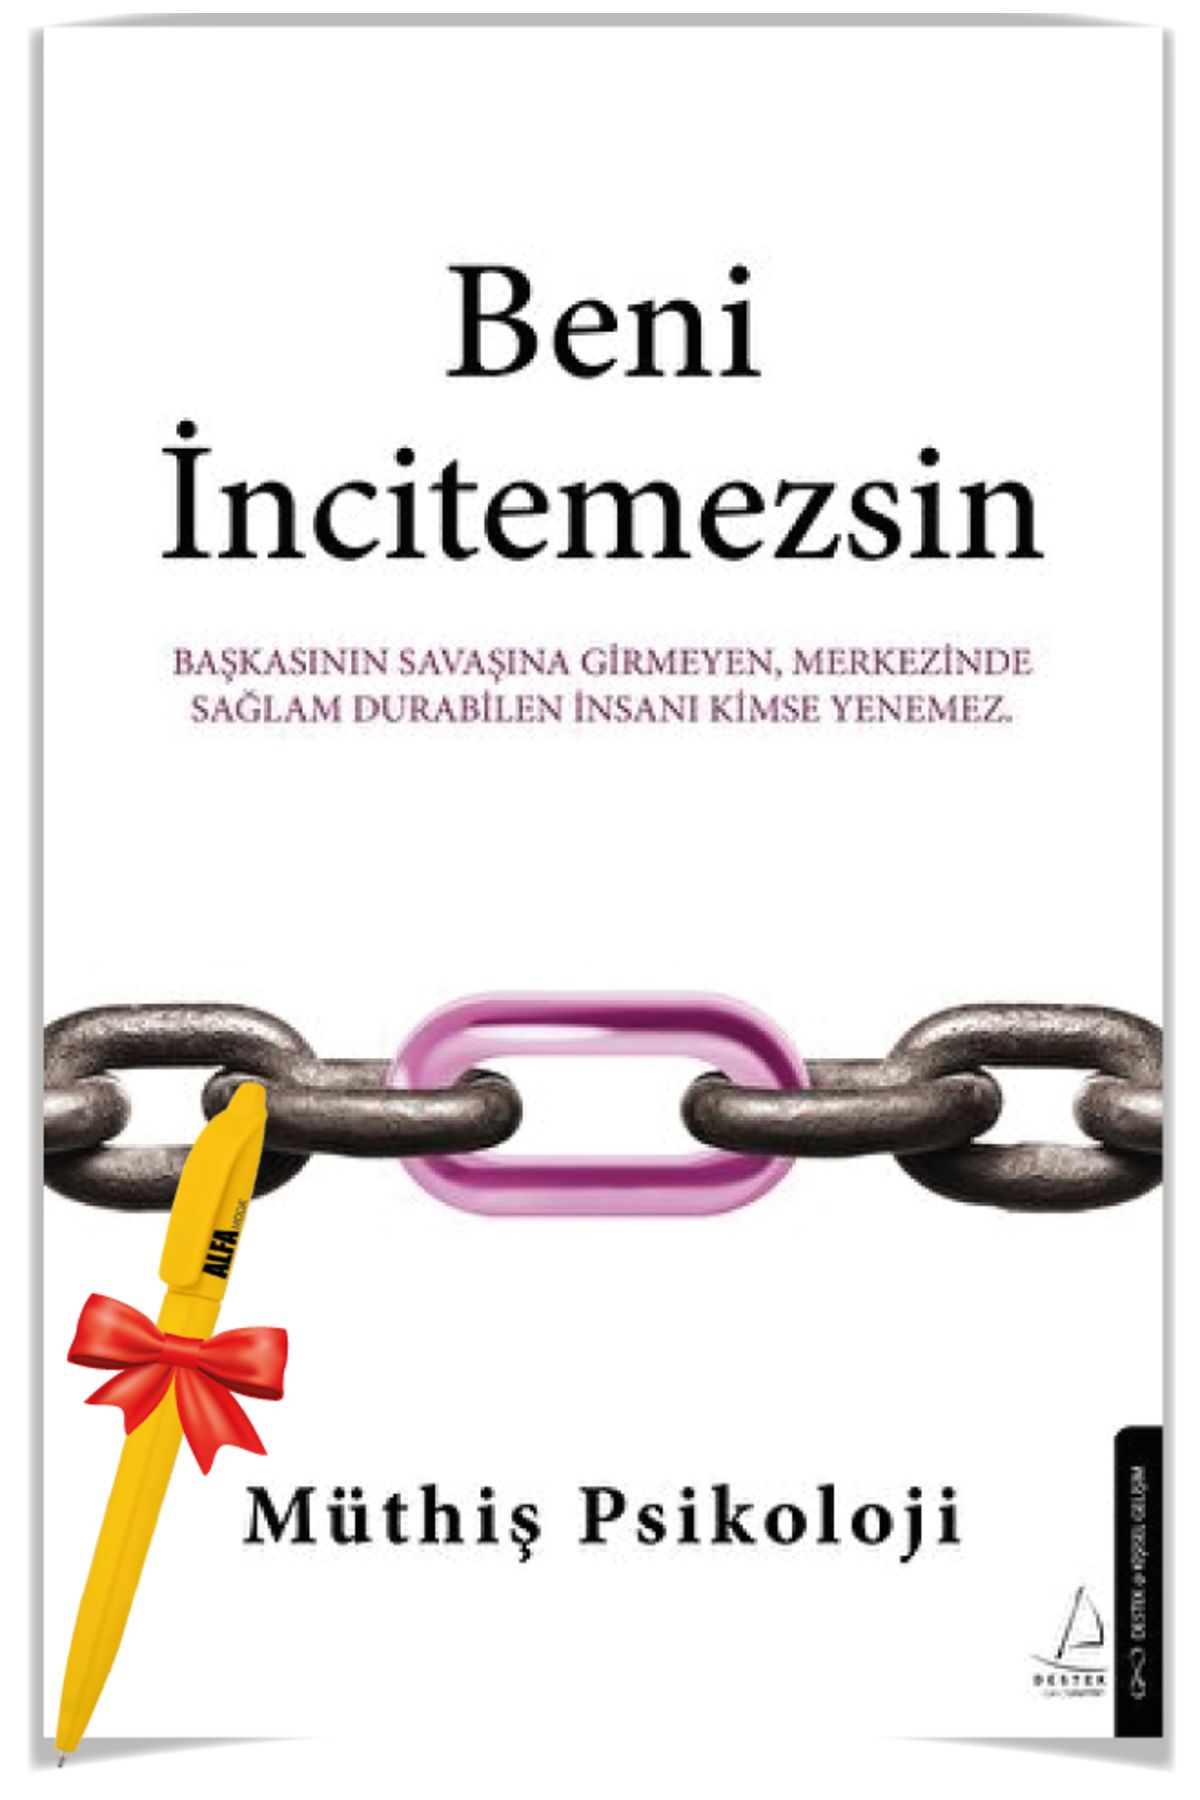 Destek Yayınları Alfa Moda Kalem + Beni İncitemezsin / Müthiş Psikoloji 2'li kişisel gelişim - Destek Yayınları